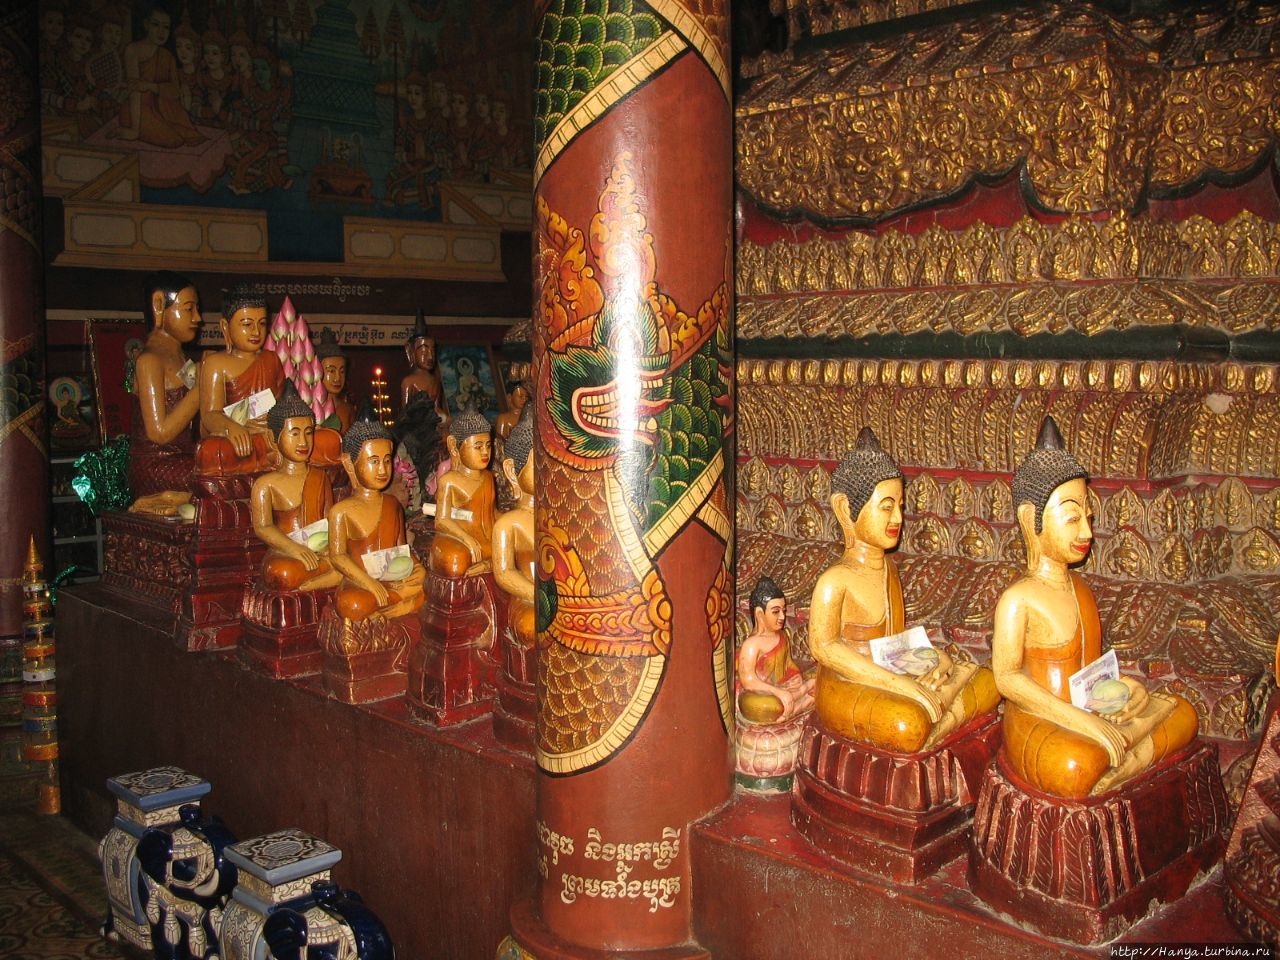 Ват Пном, или Храм на горе. Центральная вихара Пномпень, Камбоджа